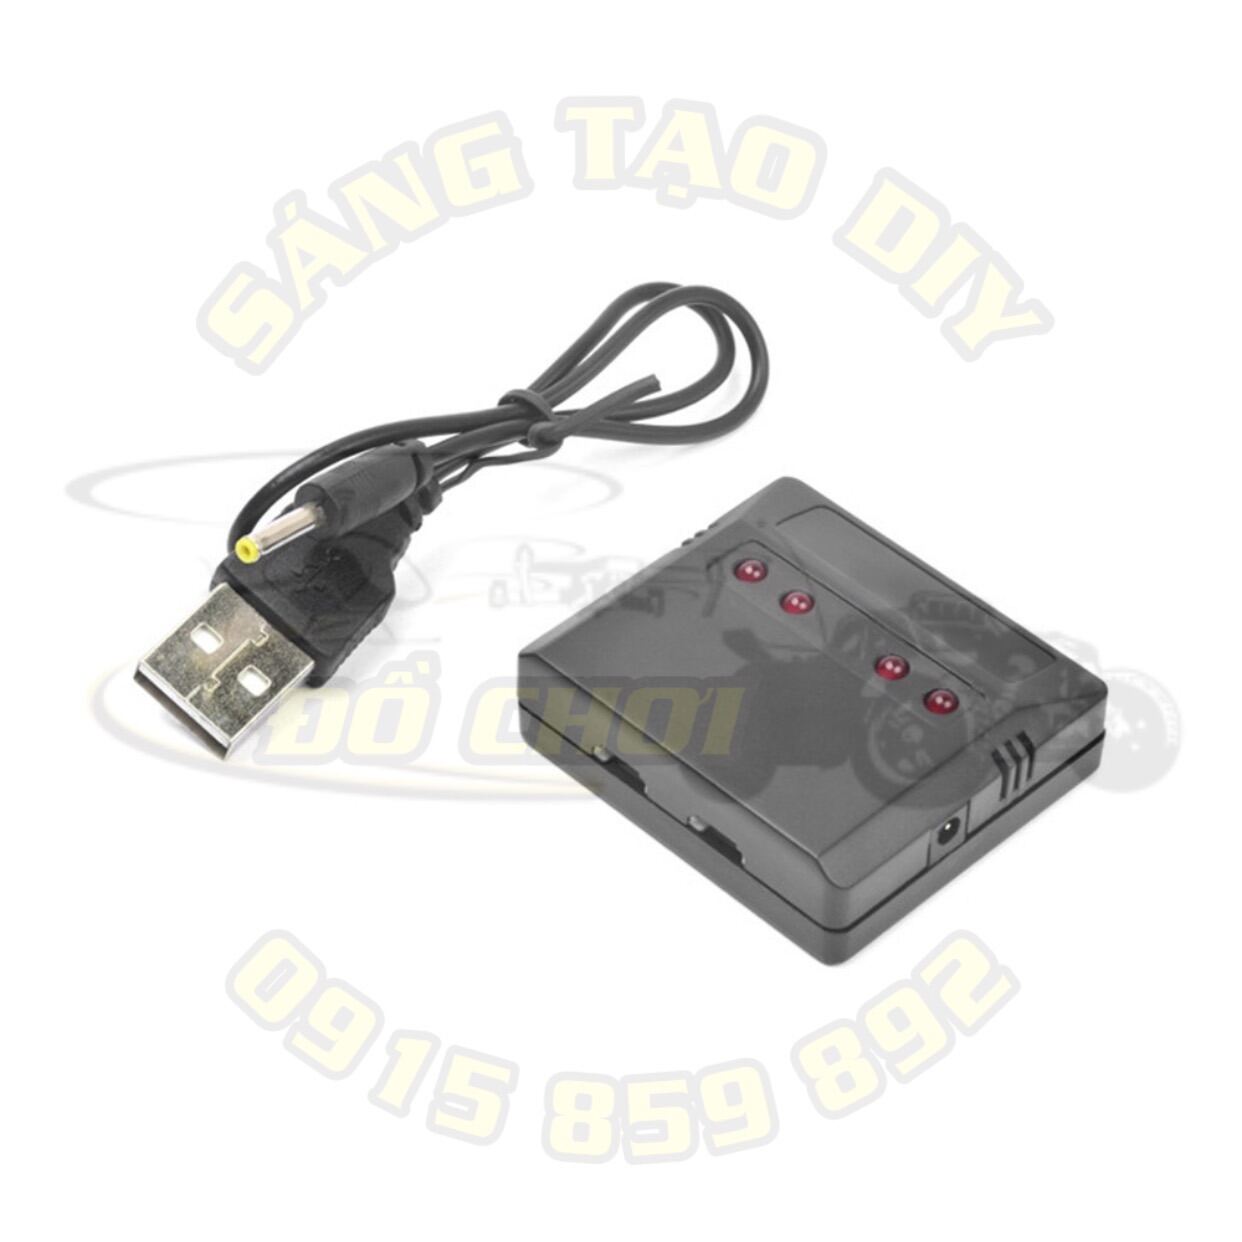 Bộ sạc pin 1s 3.7V 500mA - Sạc được 4 pin cùng một lúc, có đầu cắm sạc qua cổng USB tiện lợi